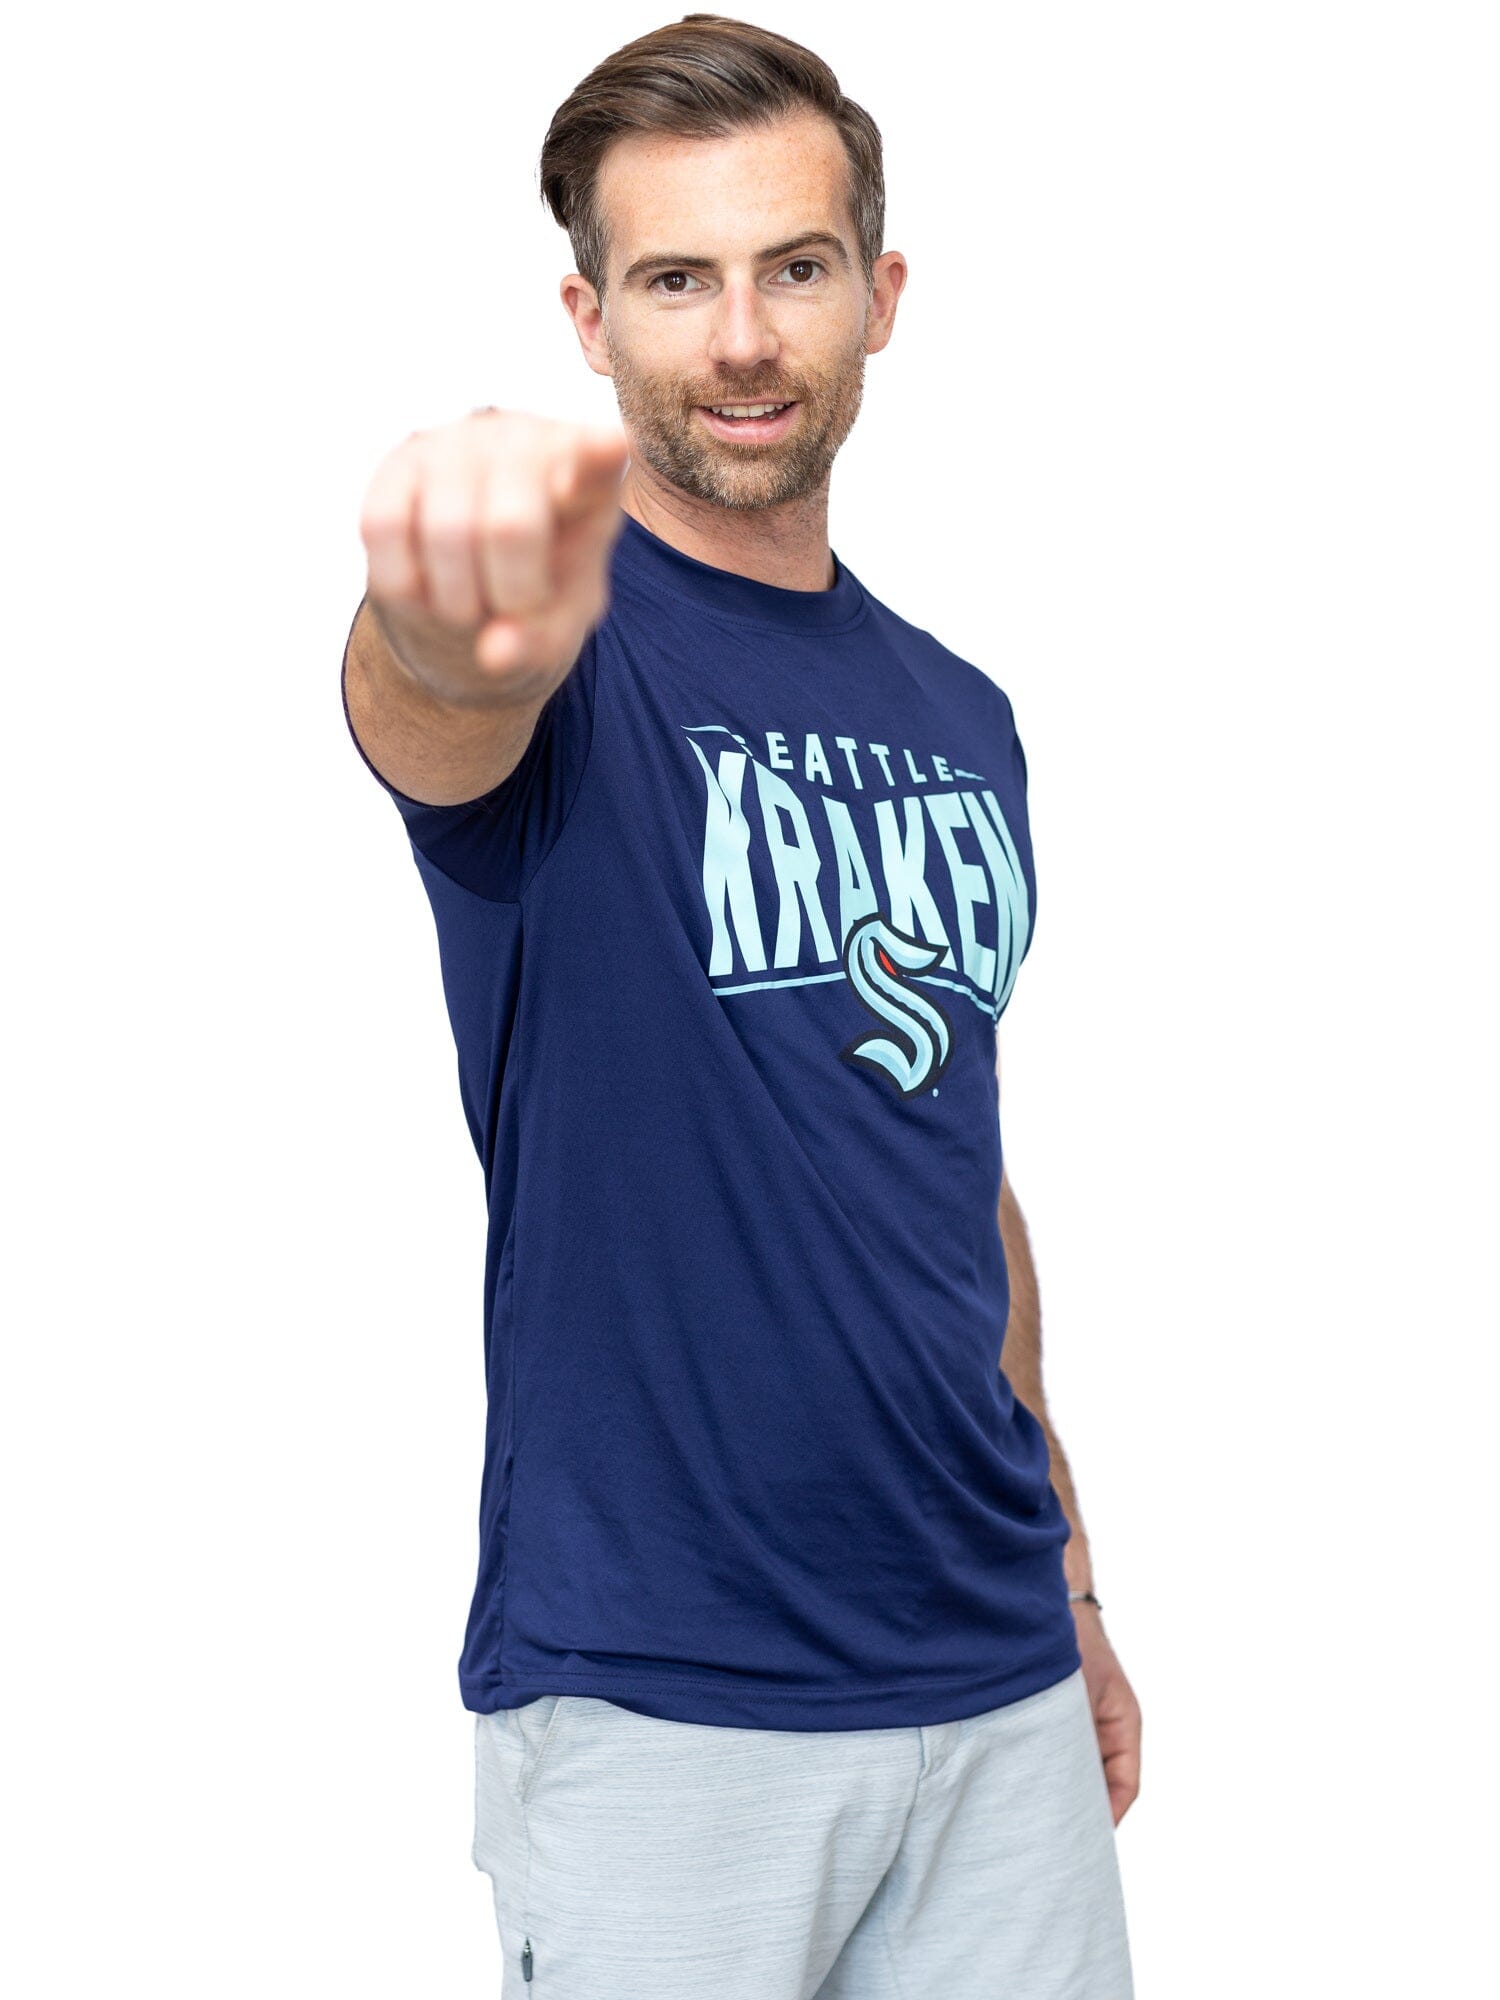 Seattle Kraken "Full Fandom" Moisture Wicking T-Shirt - Front 2